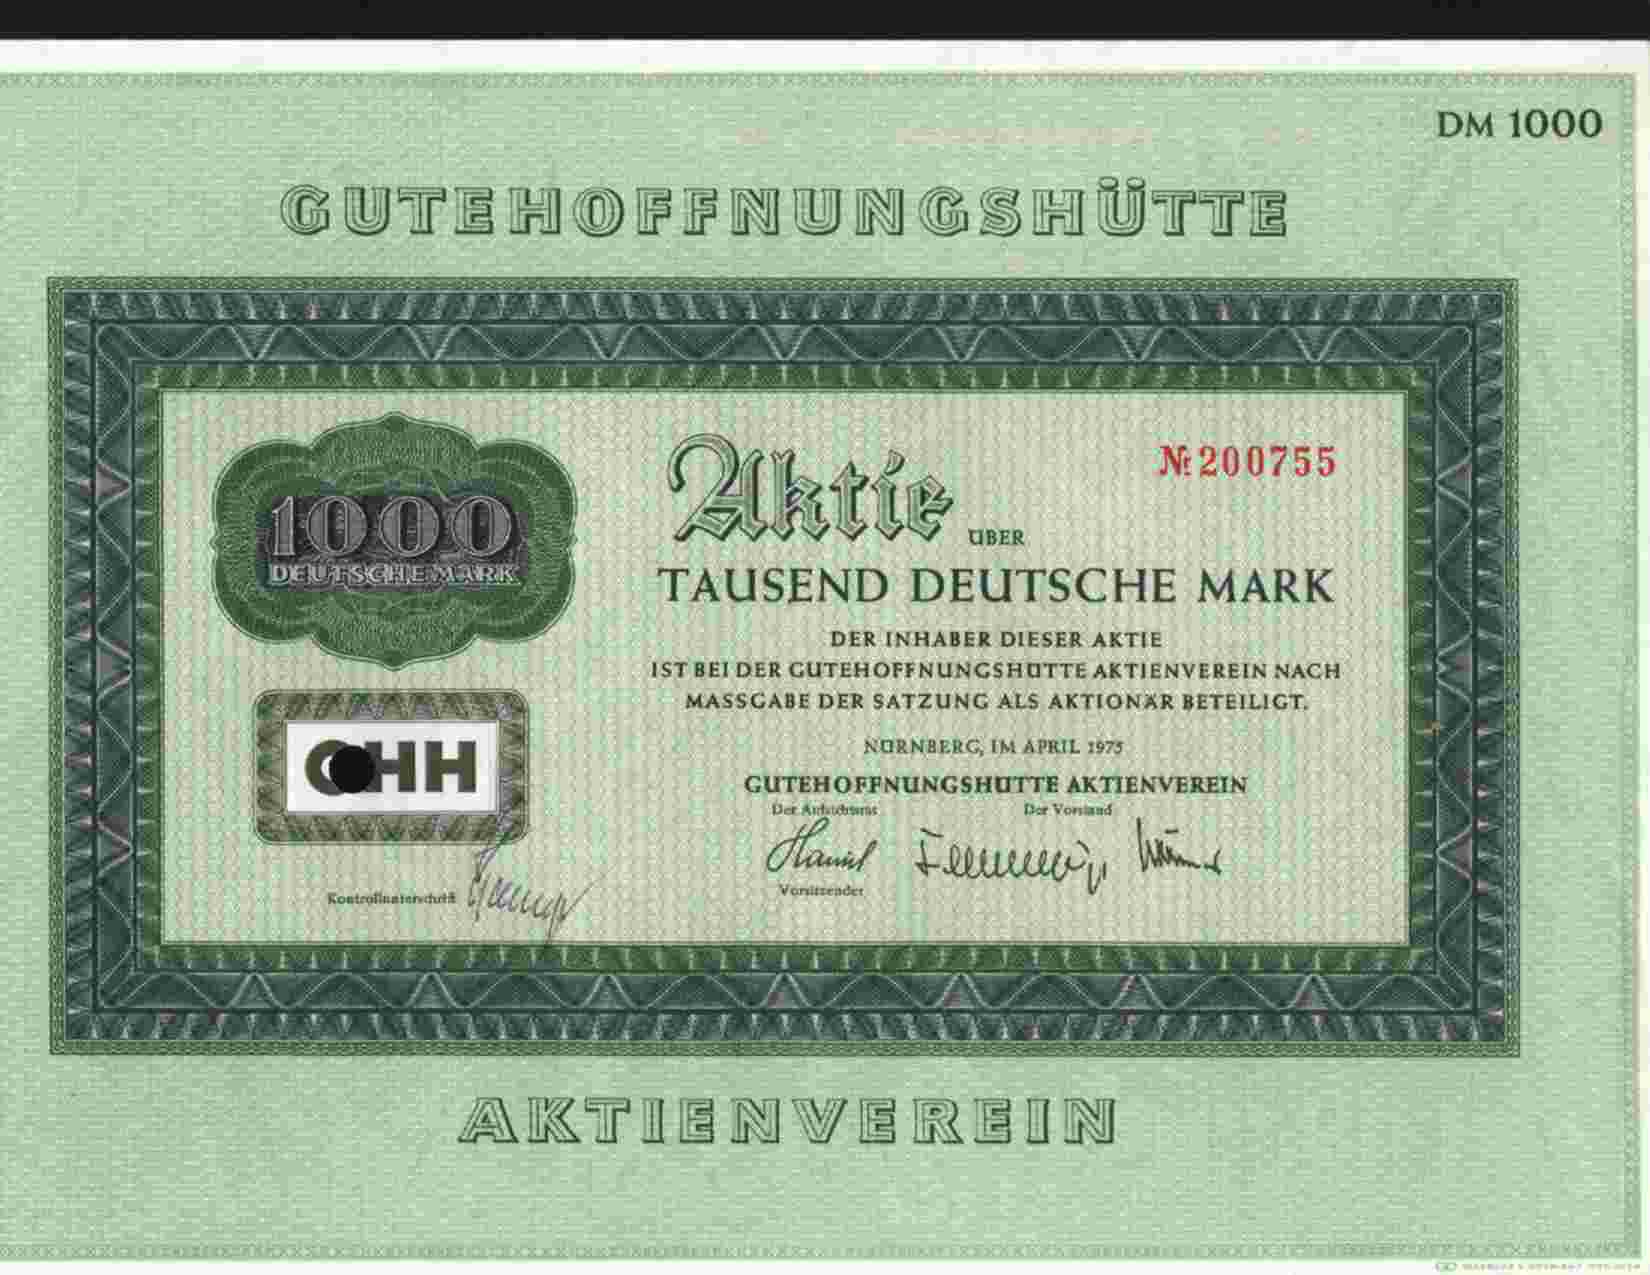 GUTEHOFFNUNGSHUTTE AKTIEVEREIN (NURNBERG / OBERHAUSEN) AKTIE 1000DM APR 1975 - Bank & Insurance